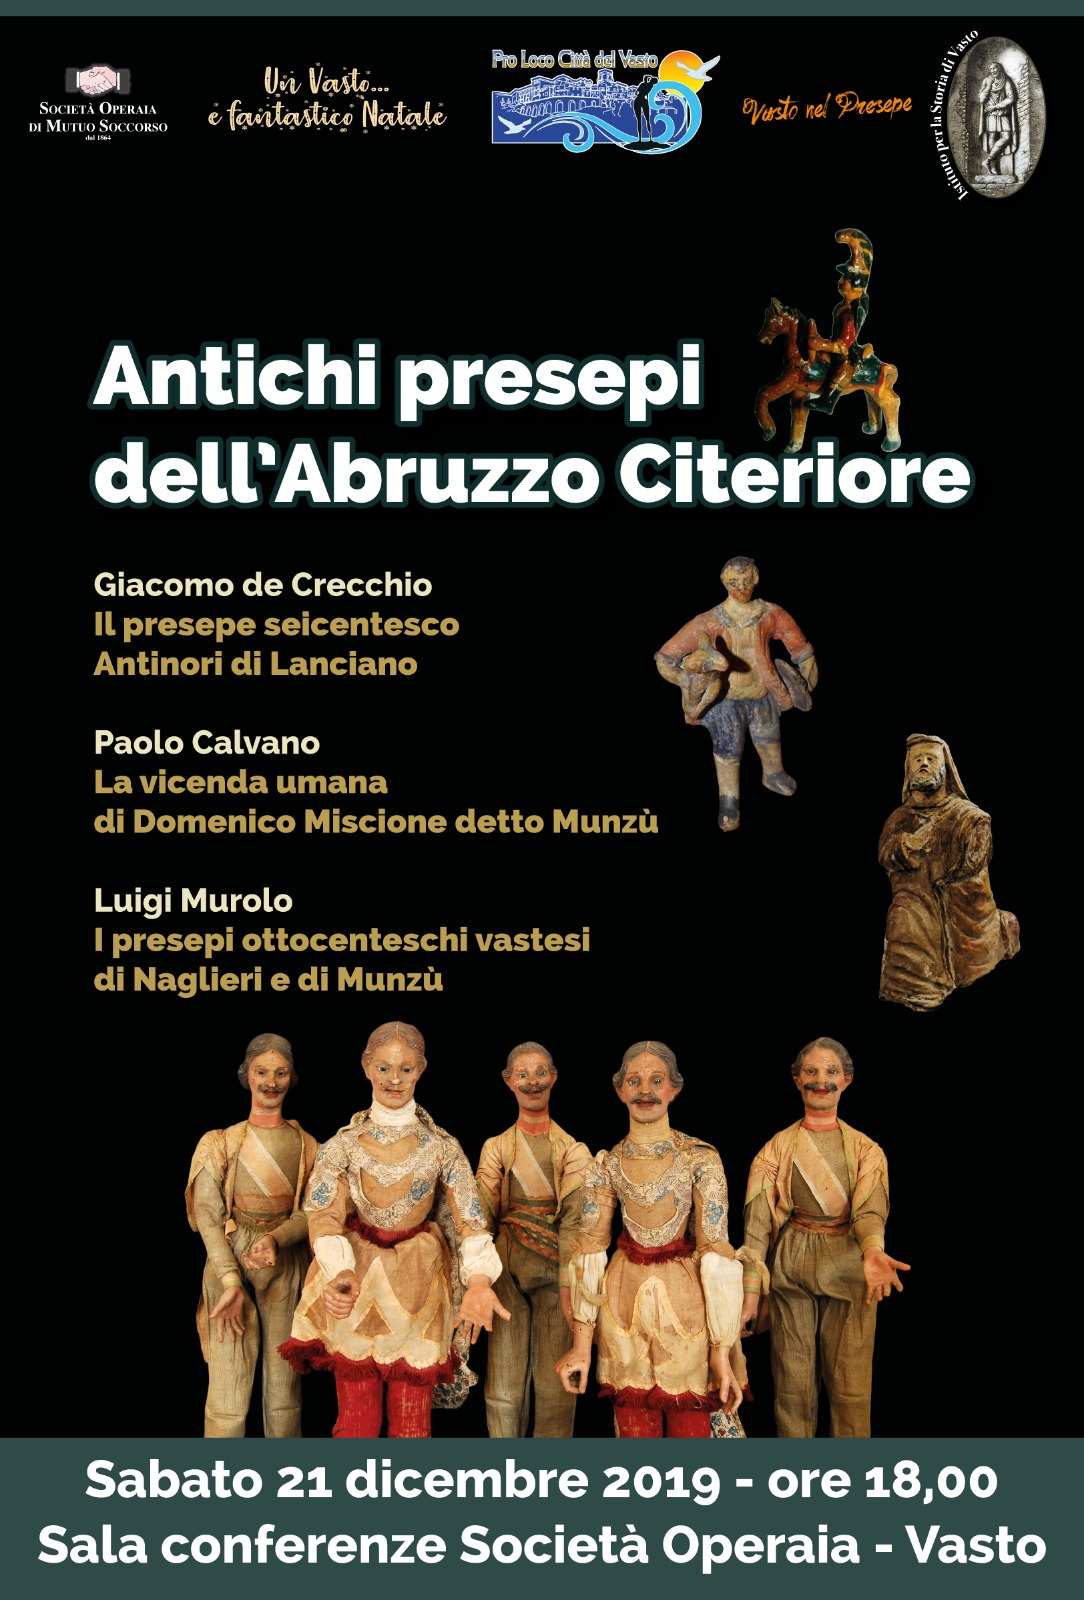 Antichi presepi dell'Abruzzo Citeriore